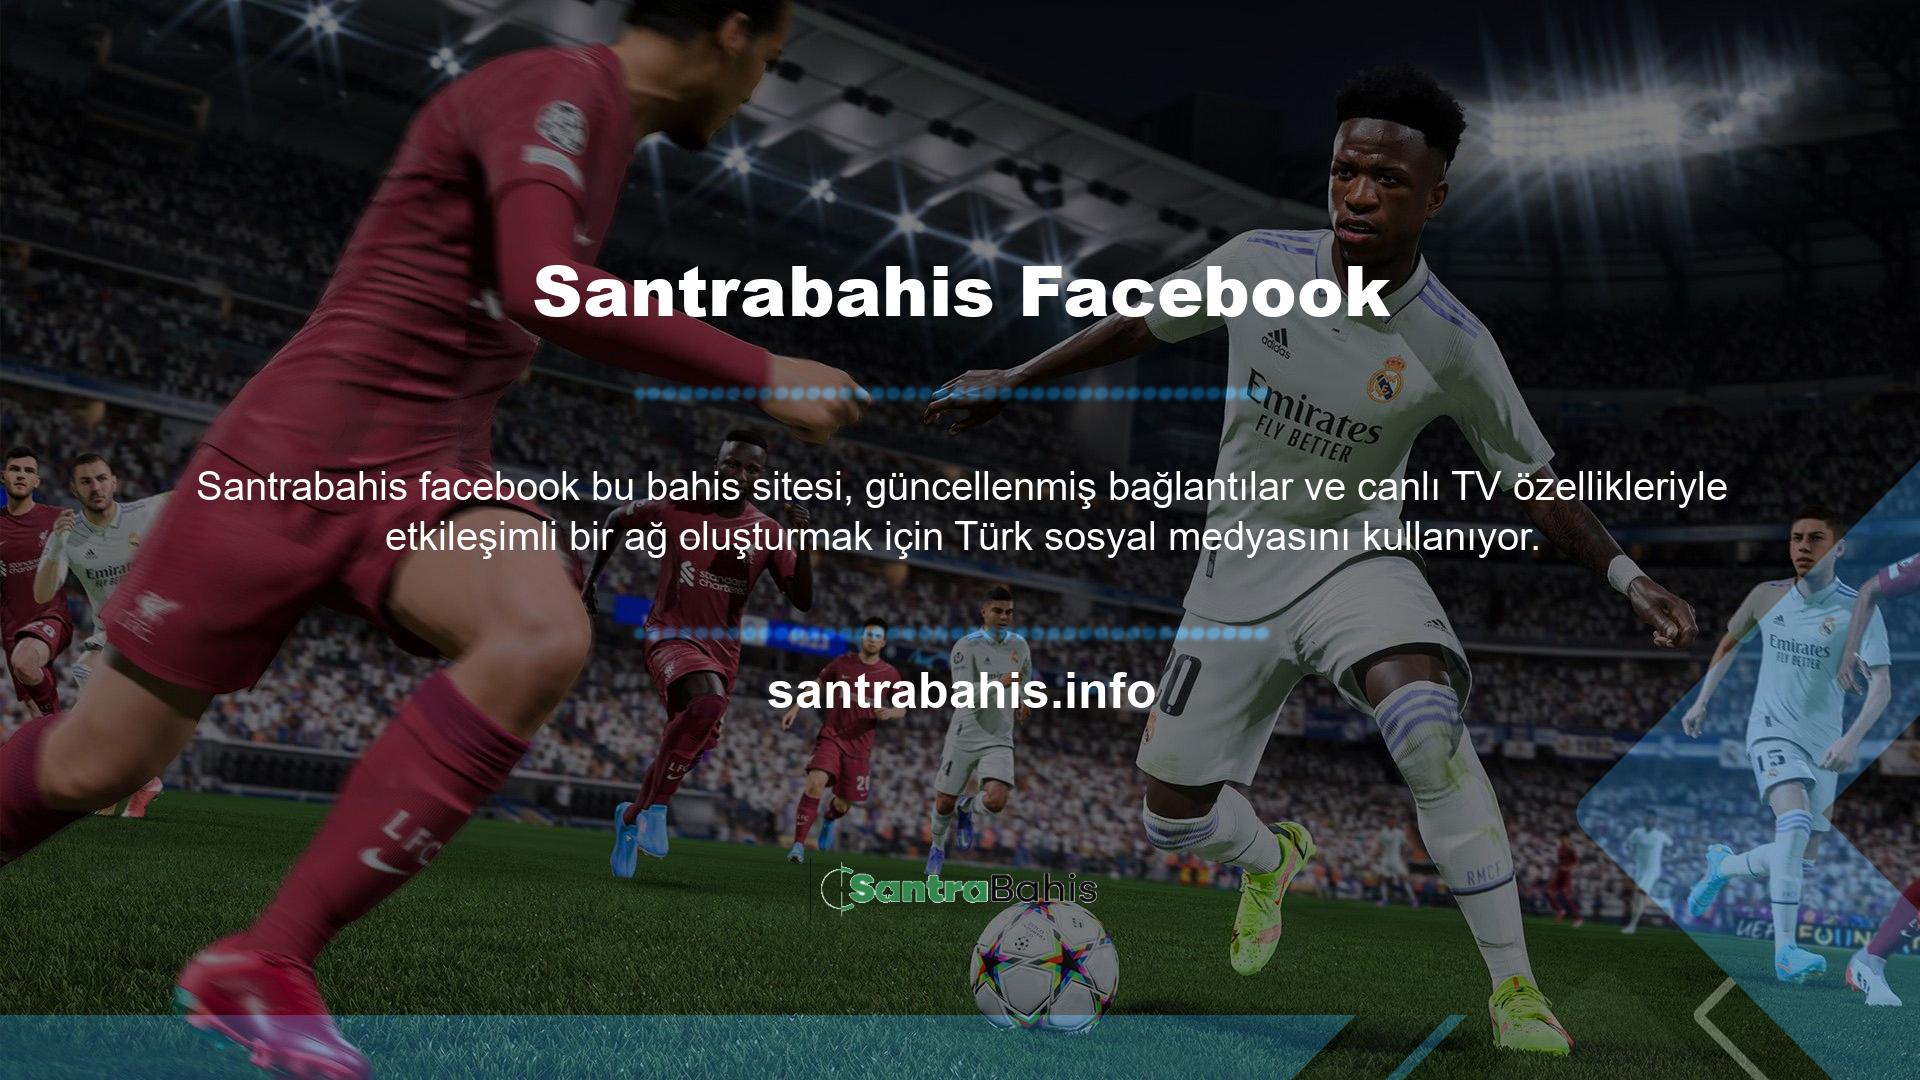 Santrabahis Facebook'tan En Yeni Elektronik Futbol Oyunu! Üstelik üyeler, Facebook hesaplarından takip edebilecekleri özel bir adresin bağlantısını paylaşarak planlarına sorunsuz bir şekilde ulaşabiliyor